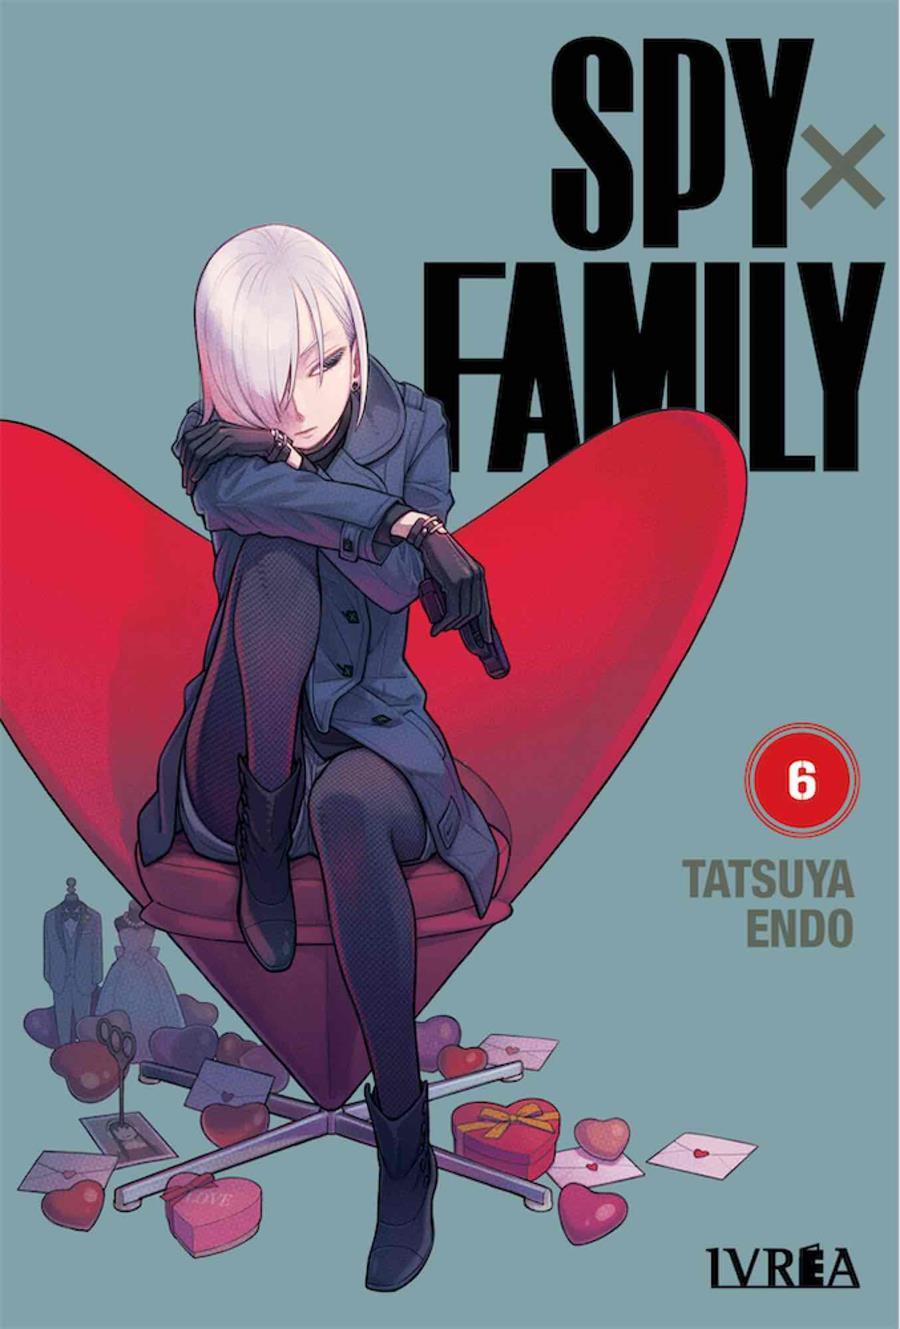 Spy x family 06 | N0421-IVR015 | Tetsuya Endo | Terra de Còmic - Tu tienda de cómics online especializada en cómics, manga y merchandising